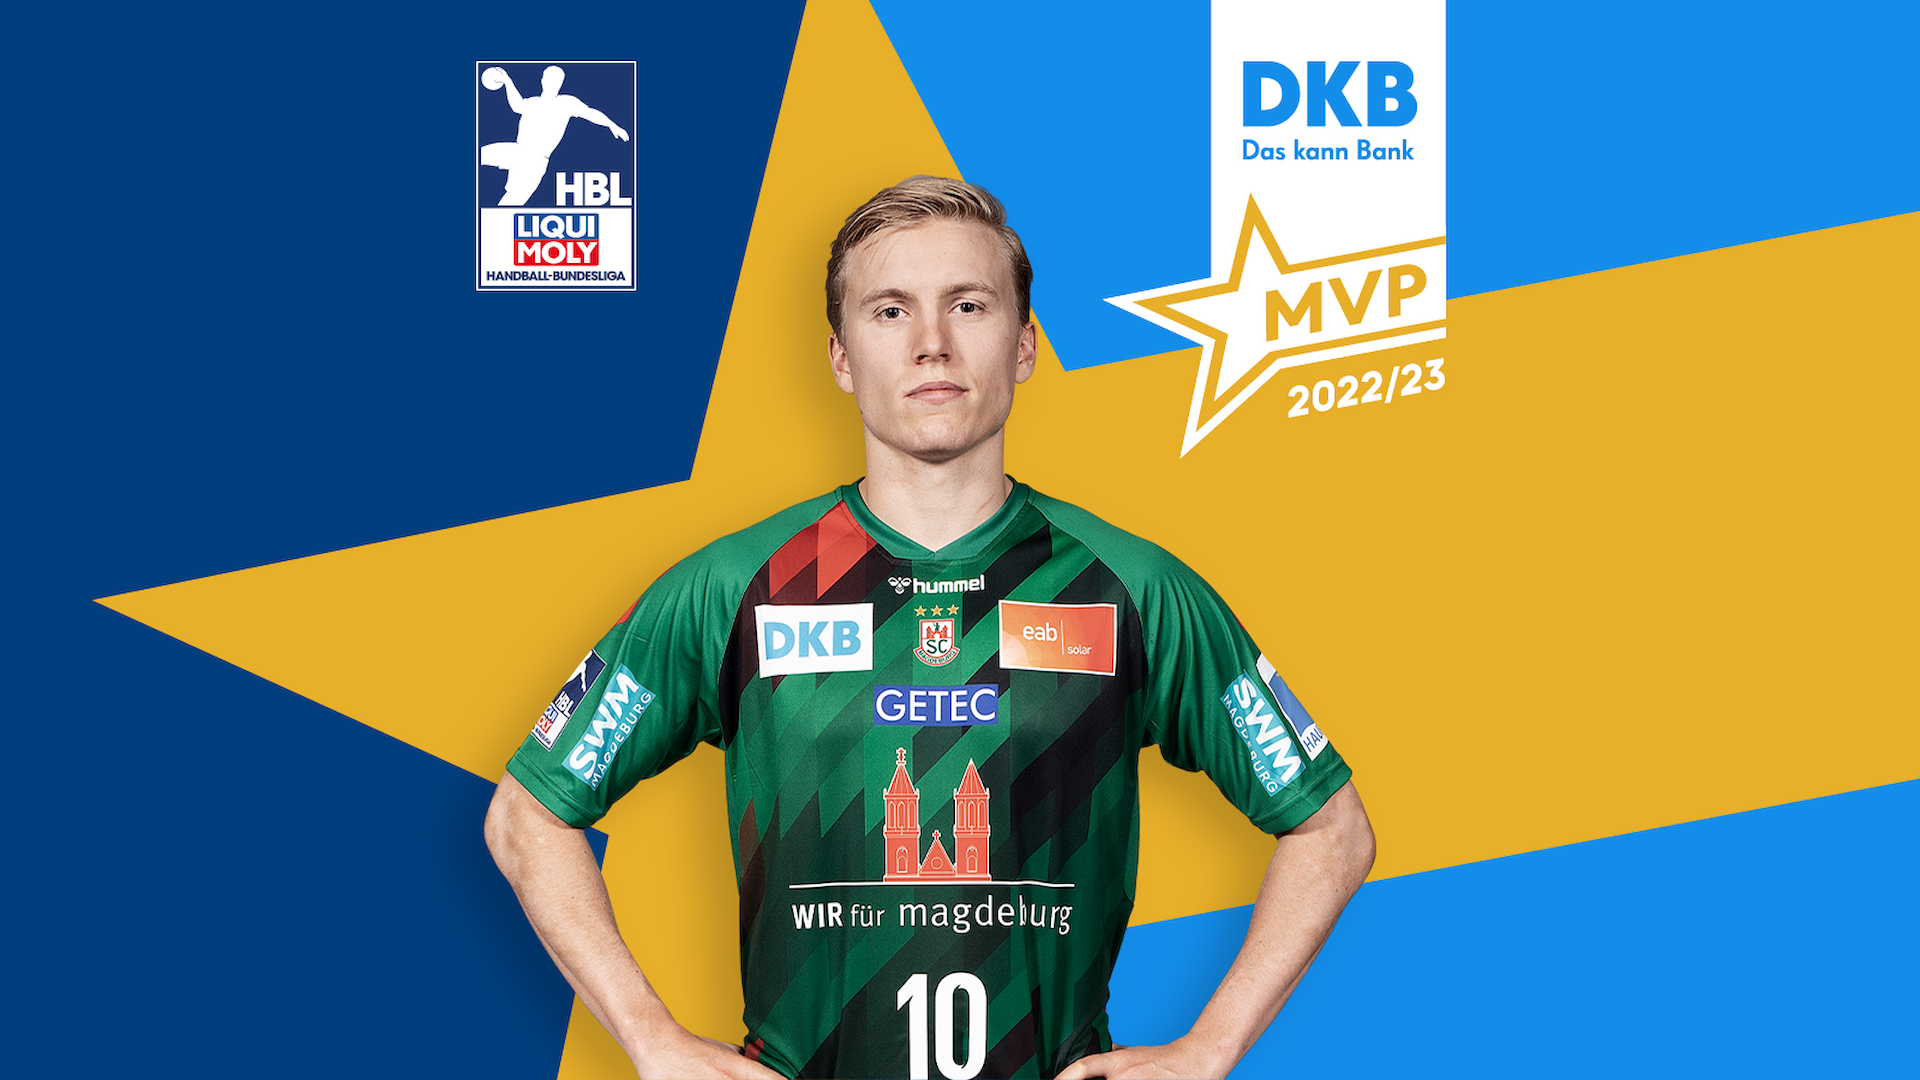 DKB MVP 2022/23“ Gisli Kristjansson ist bester Spieler der Saison! News LIQUI MOLY HBL